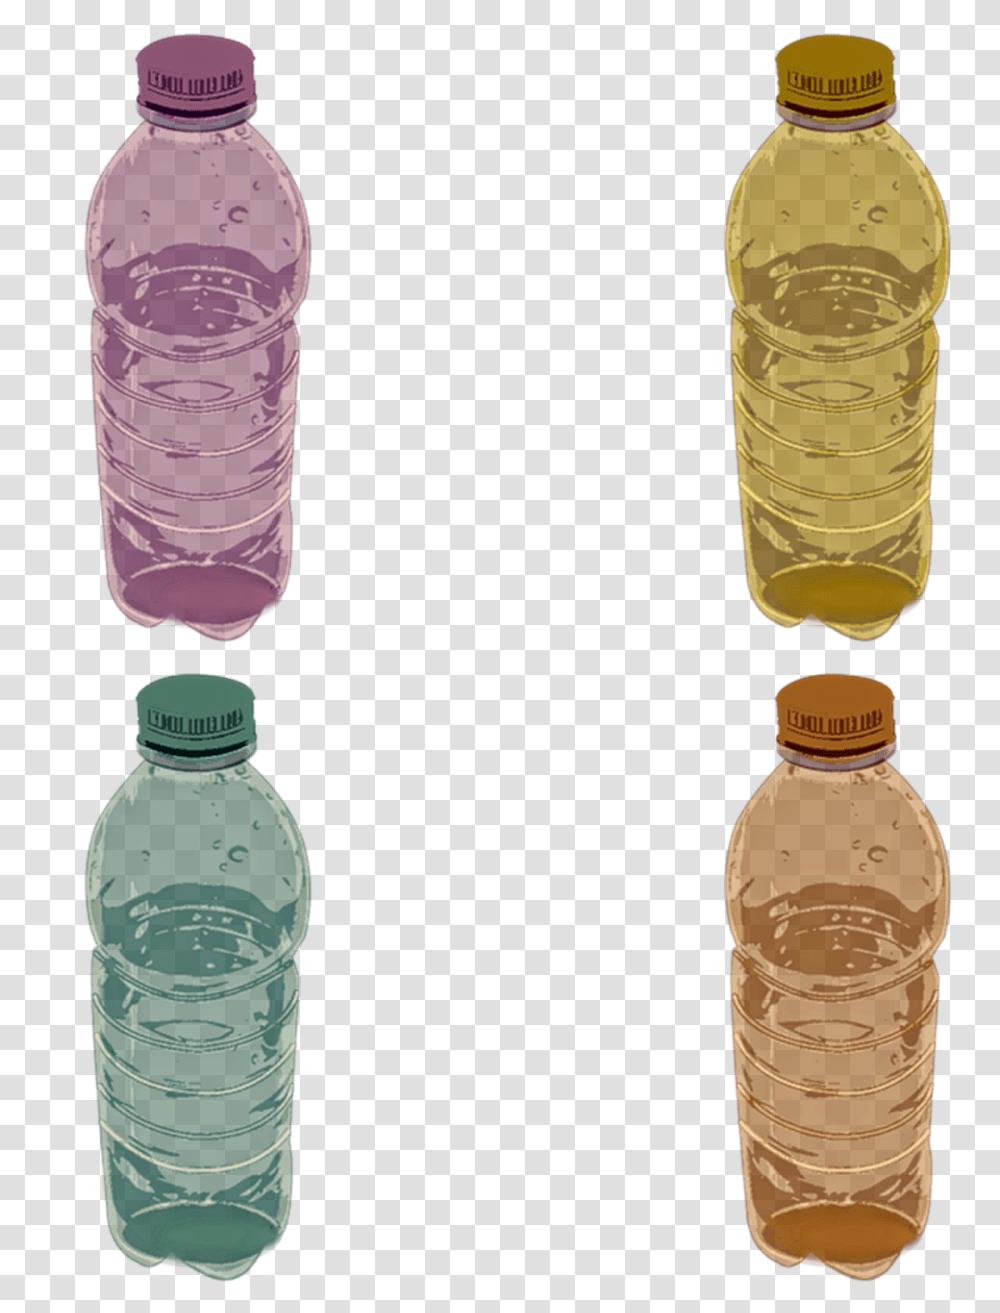 Plastic Bottle, Beverage, Drink, Pop Bottle, Water Bottle Transparent Png